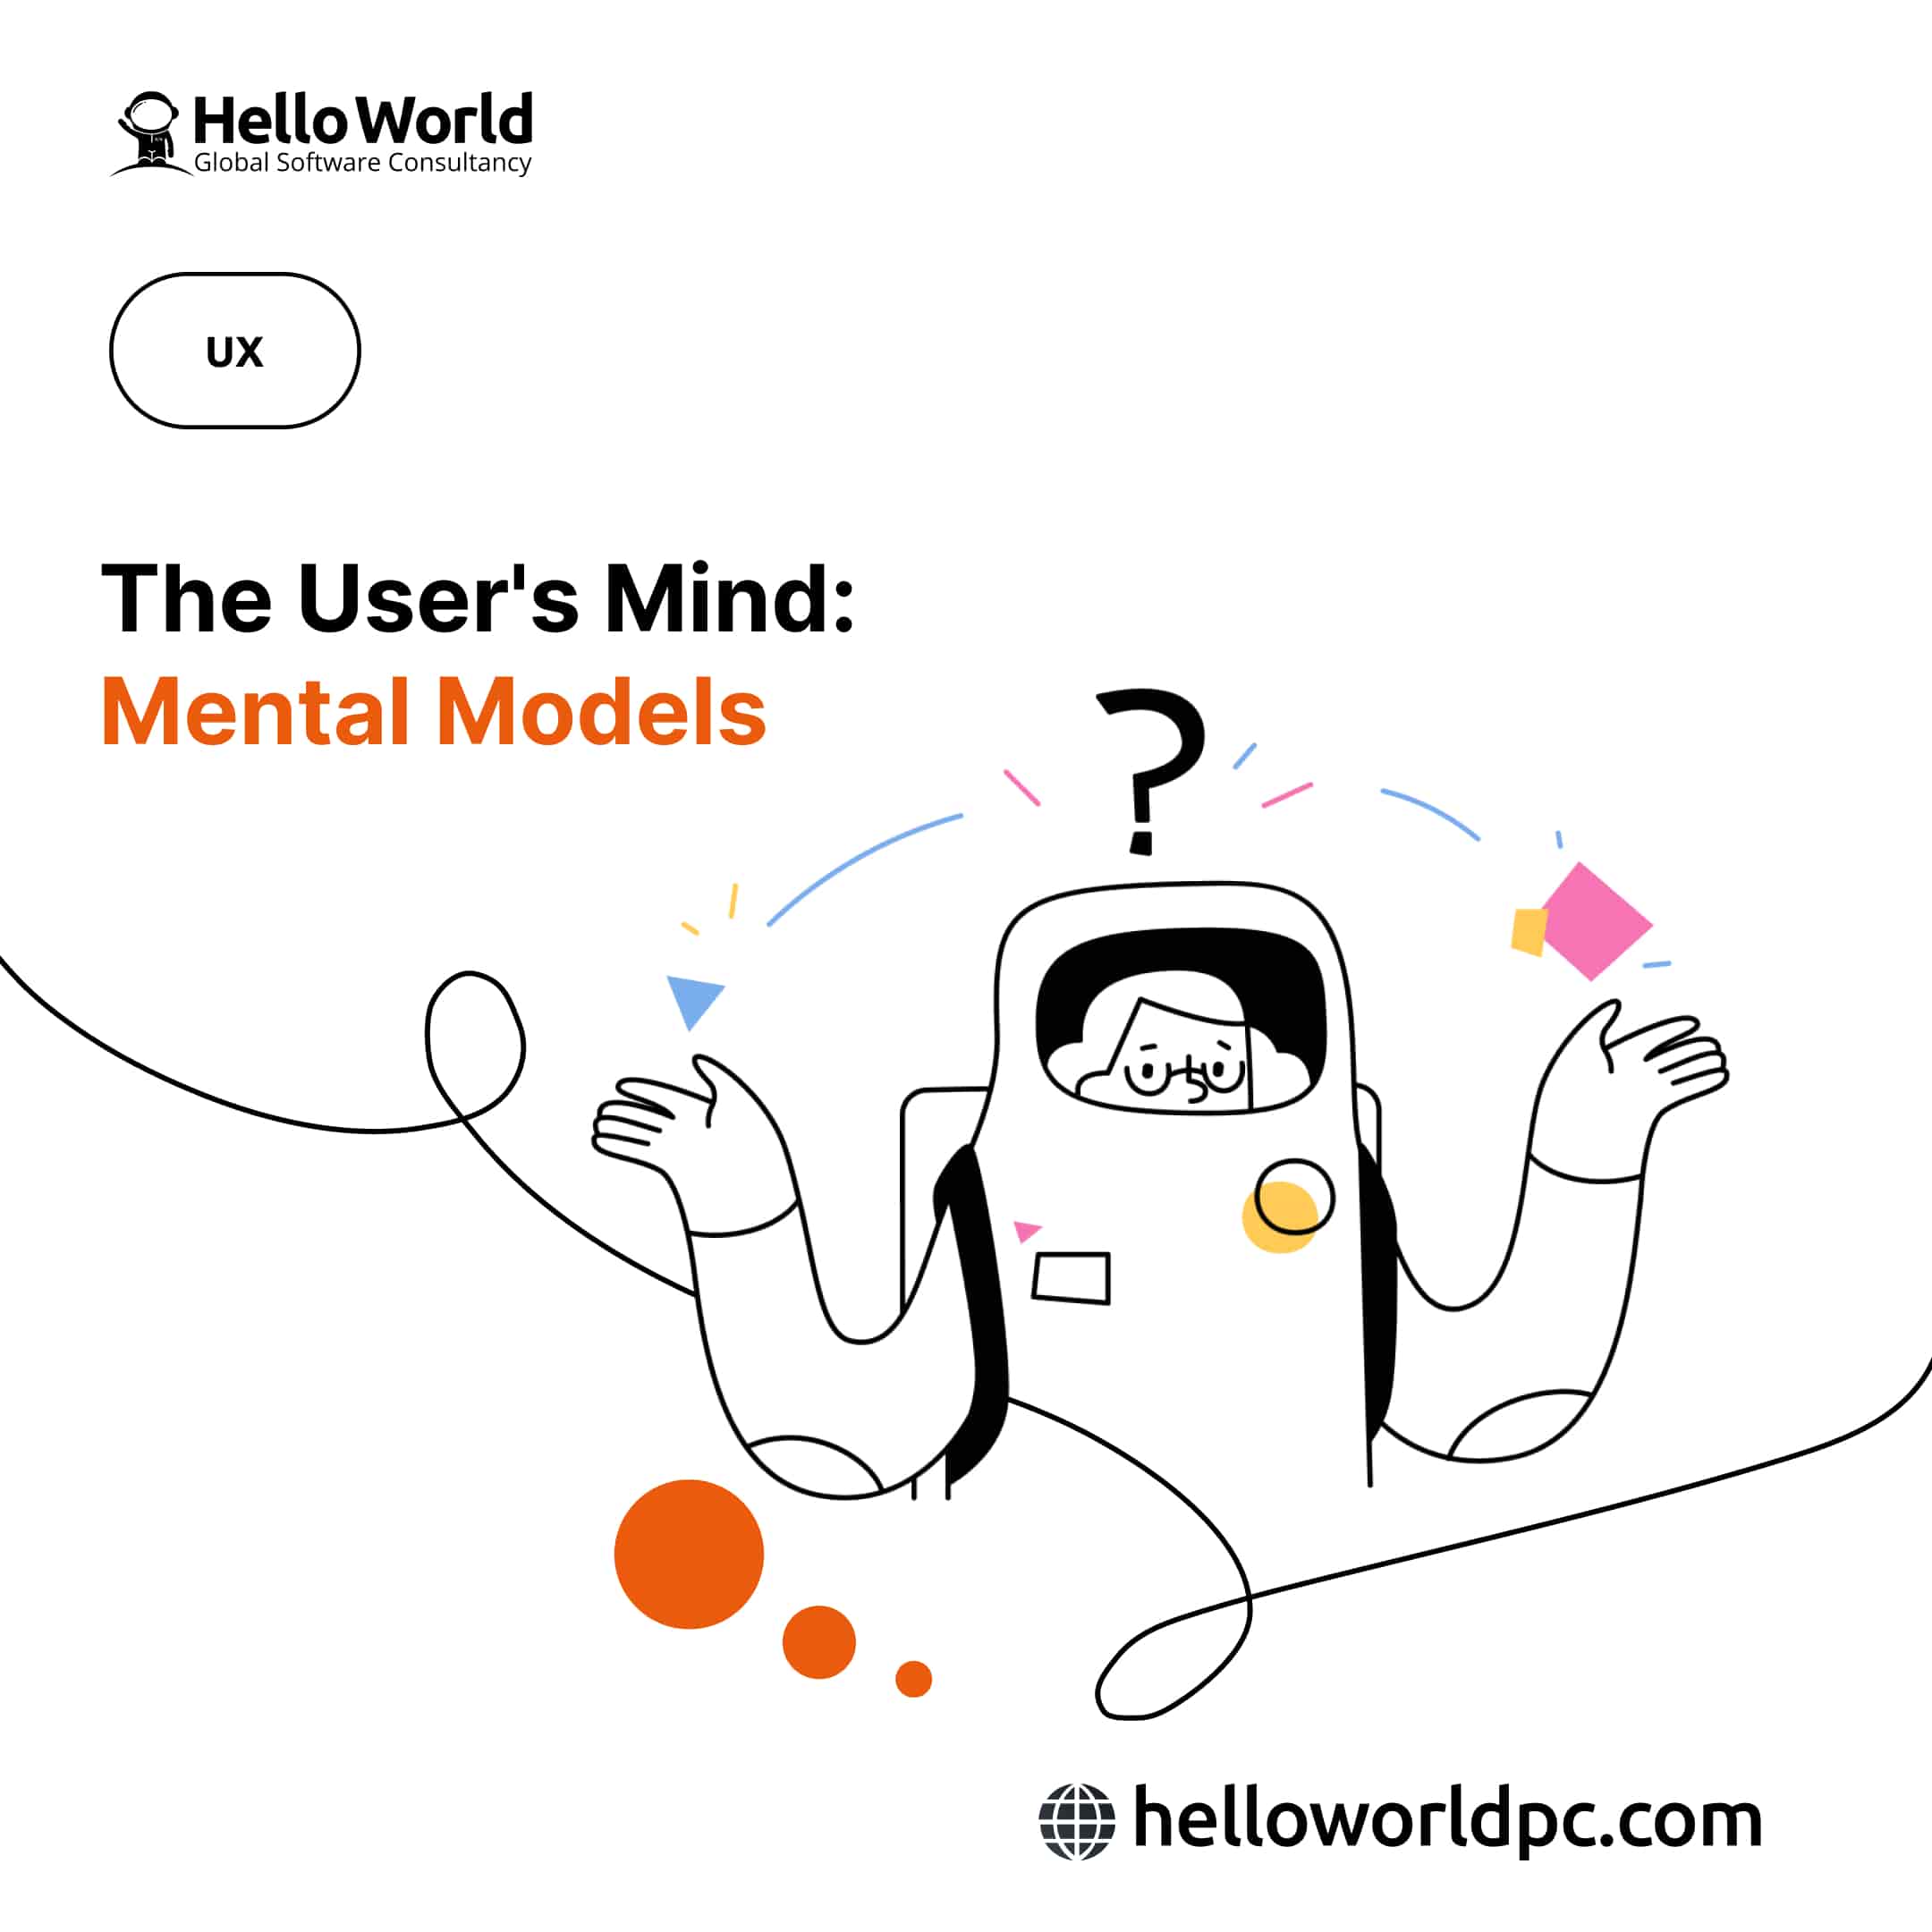 The User's Mind: Mental Models